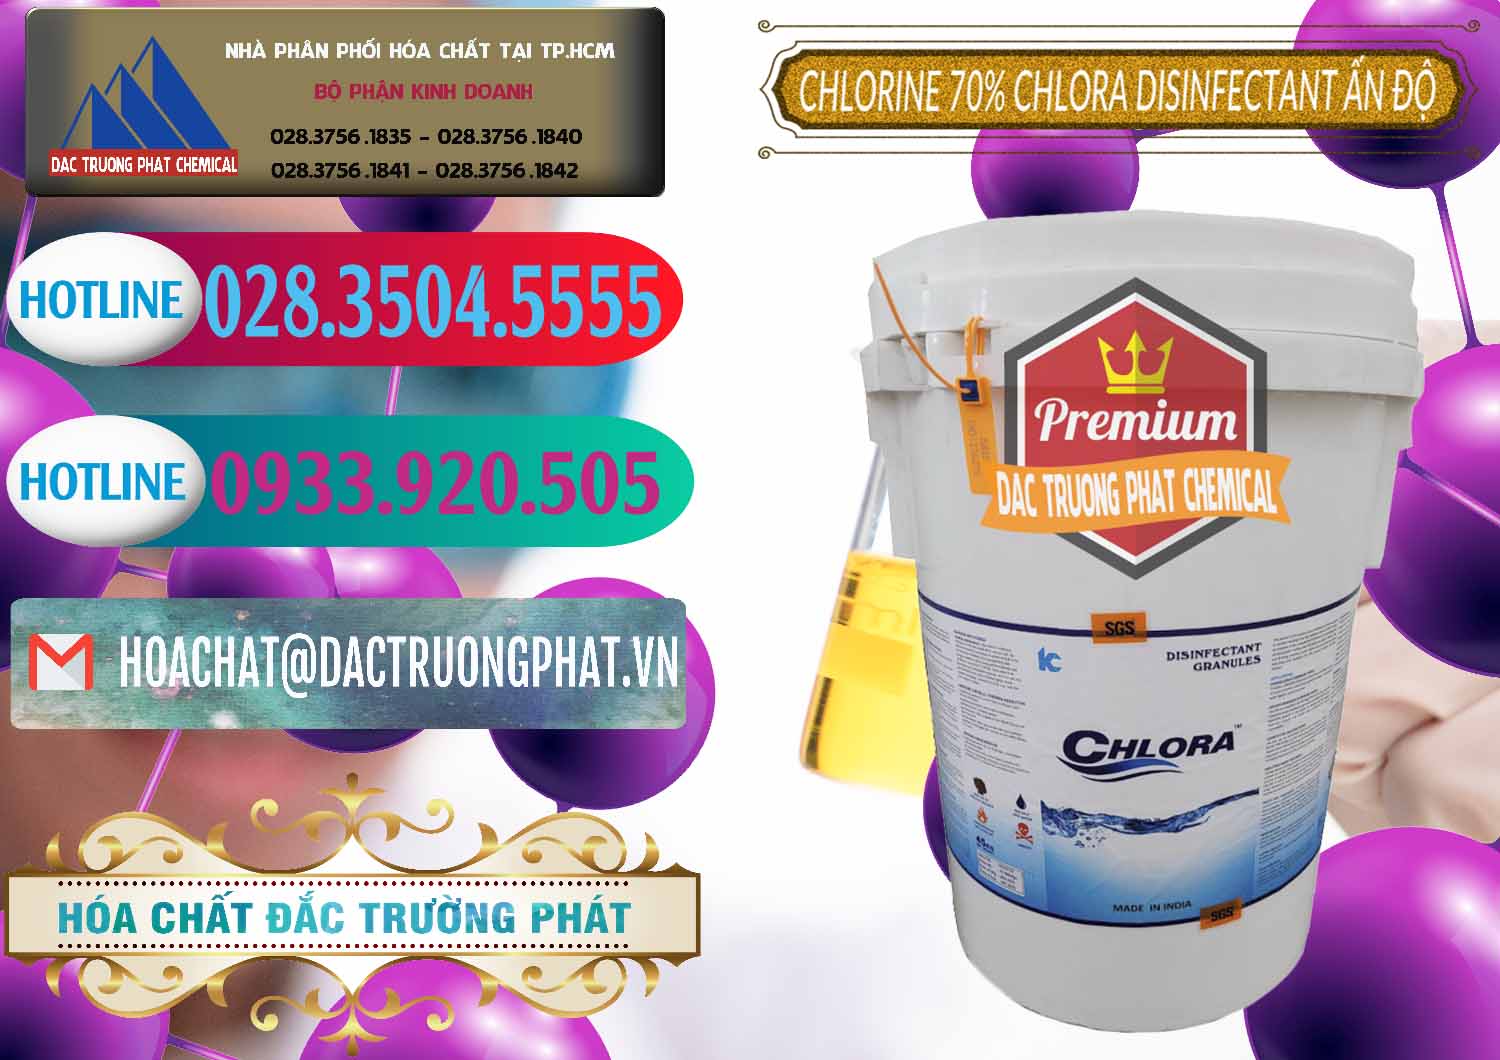 Đơn vị chuyên bán & phân phối Chlorine – Clorin 70% Chlora Disinfectant Ấn Độ India - 0213 - Cty phân phối và kinh doanh hóa chất tại TP.HCM - truongphat.vn